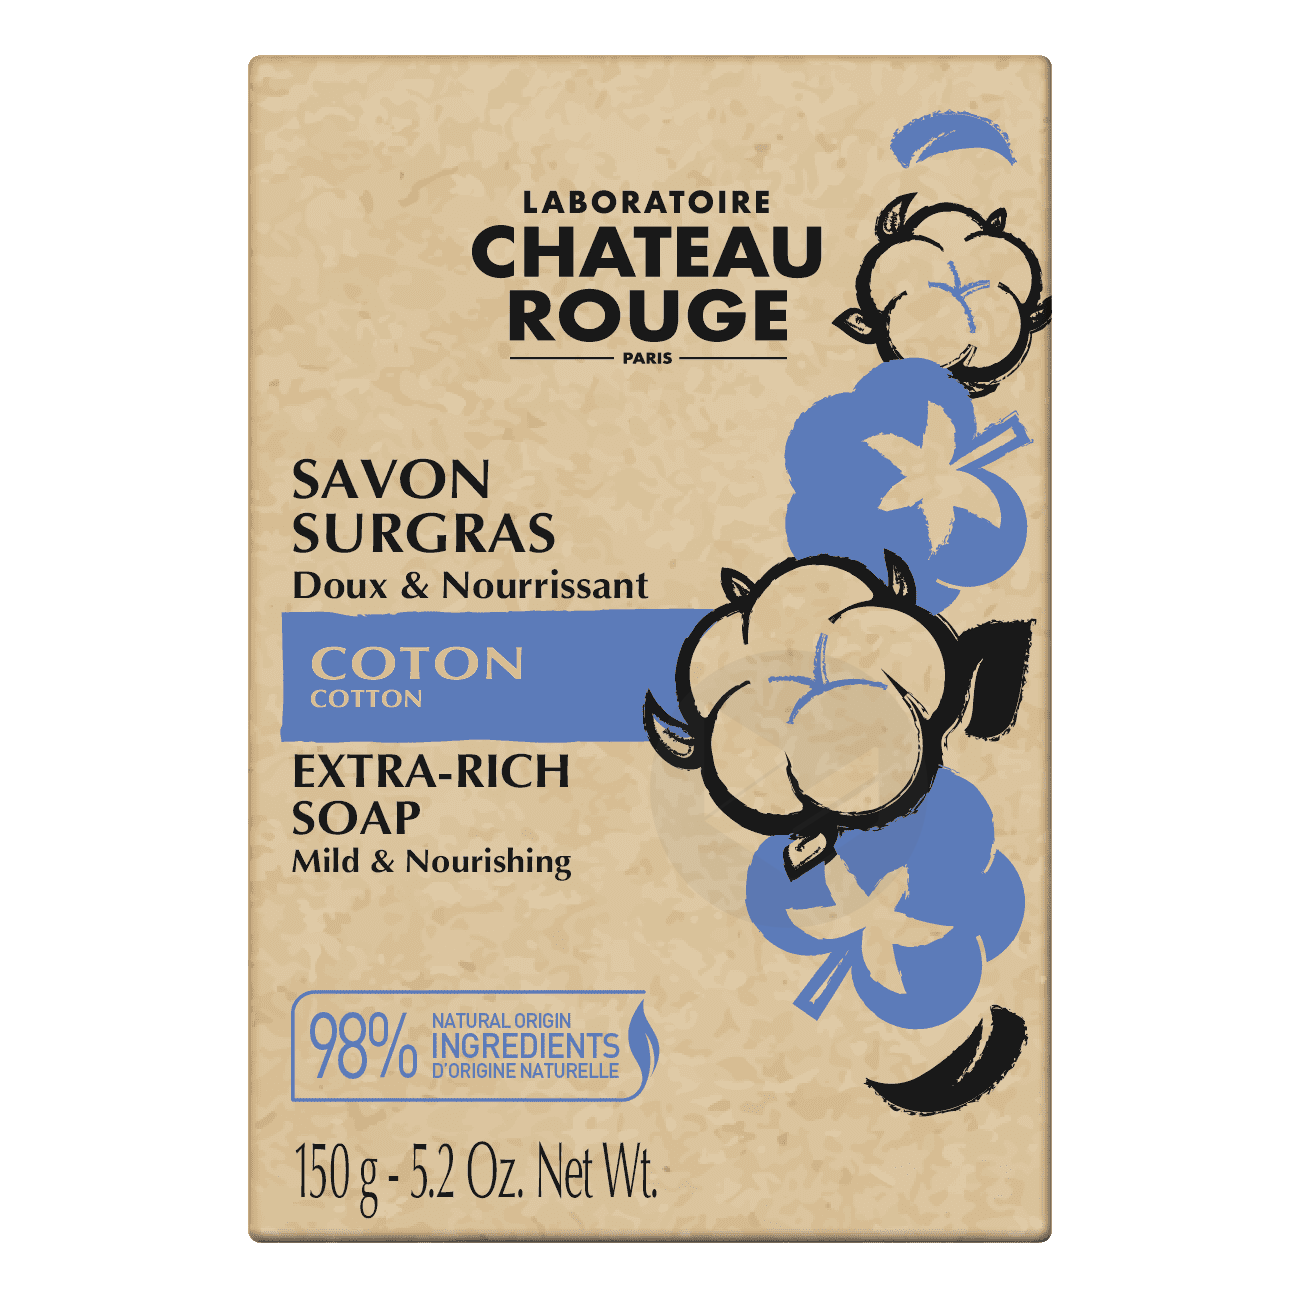 CHATEAU ROUGE PARIS COTTON EXTRA-RICH SOAP.